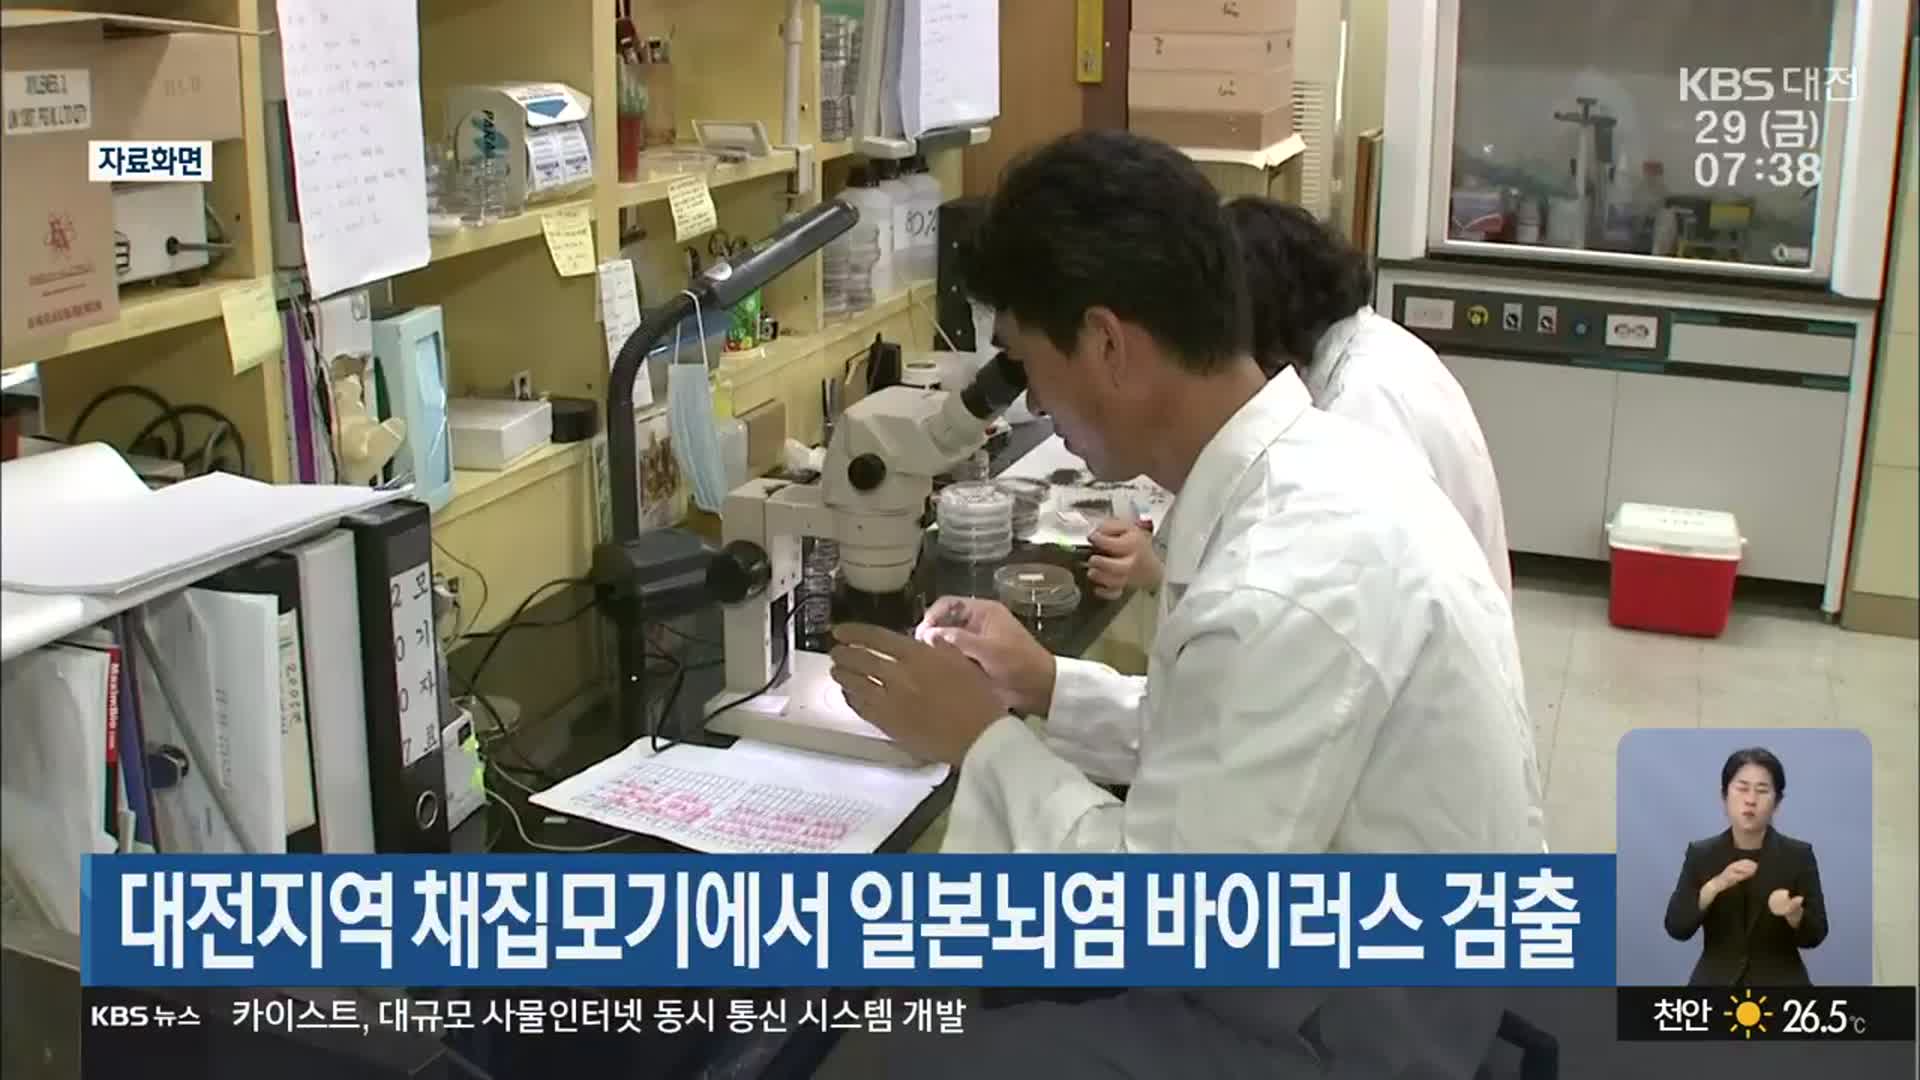 대전지역 채집모기에서 일본뇌염 바이러스 검출